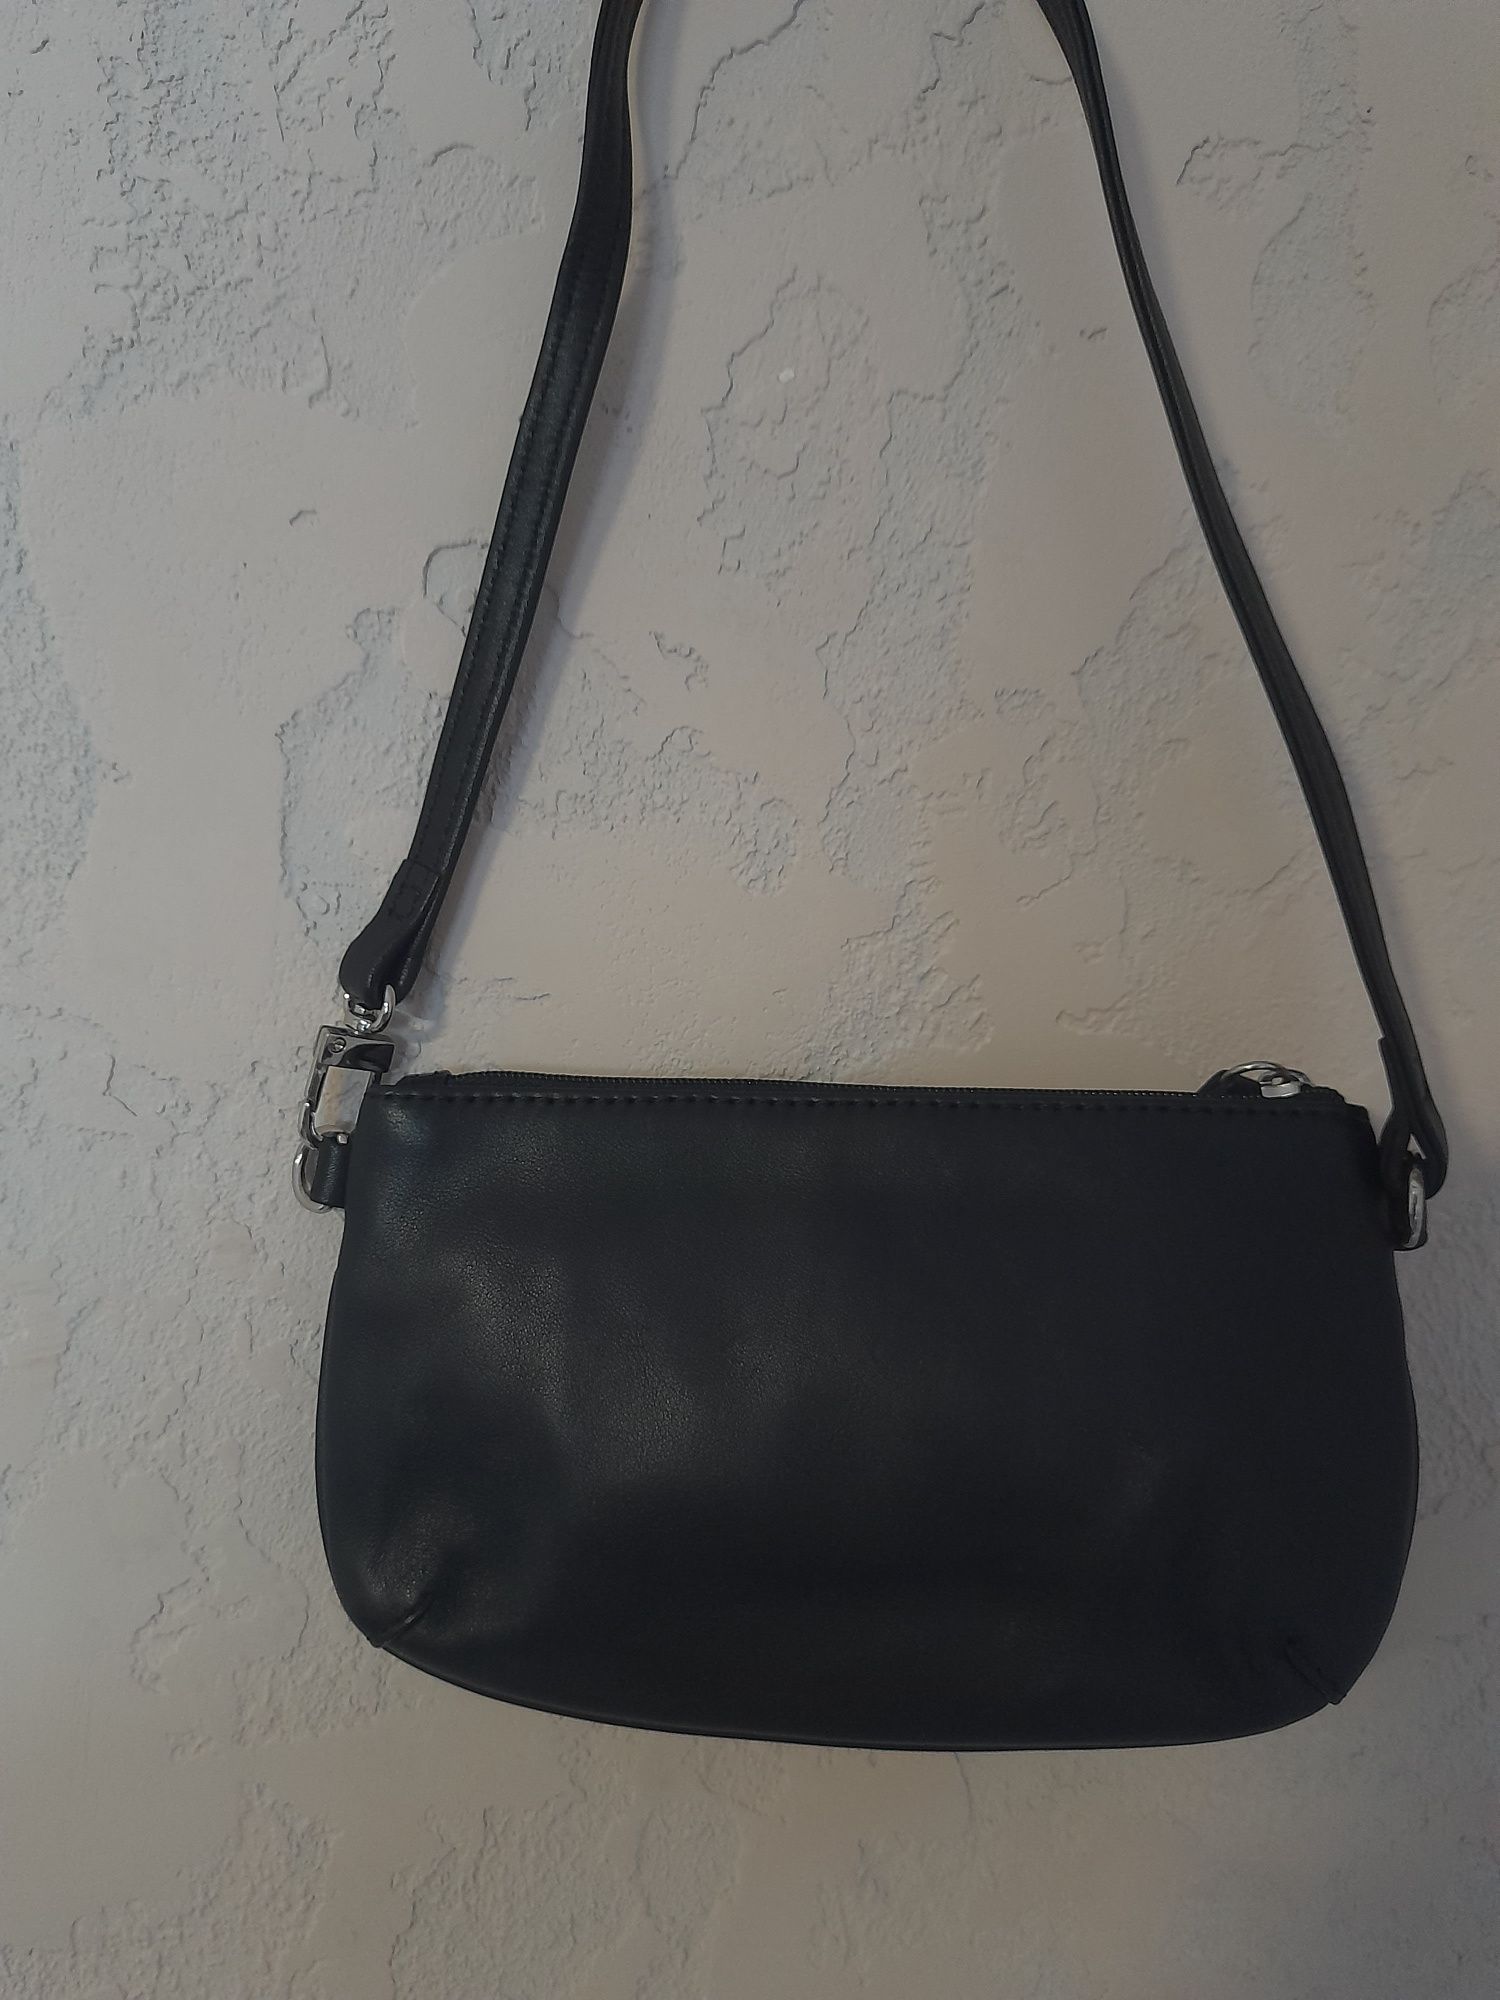 Маленькая черная кожаная сумка-клатч косметичка в стиле 90-х от Radley